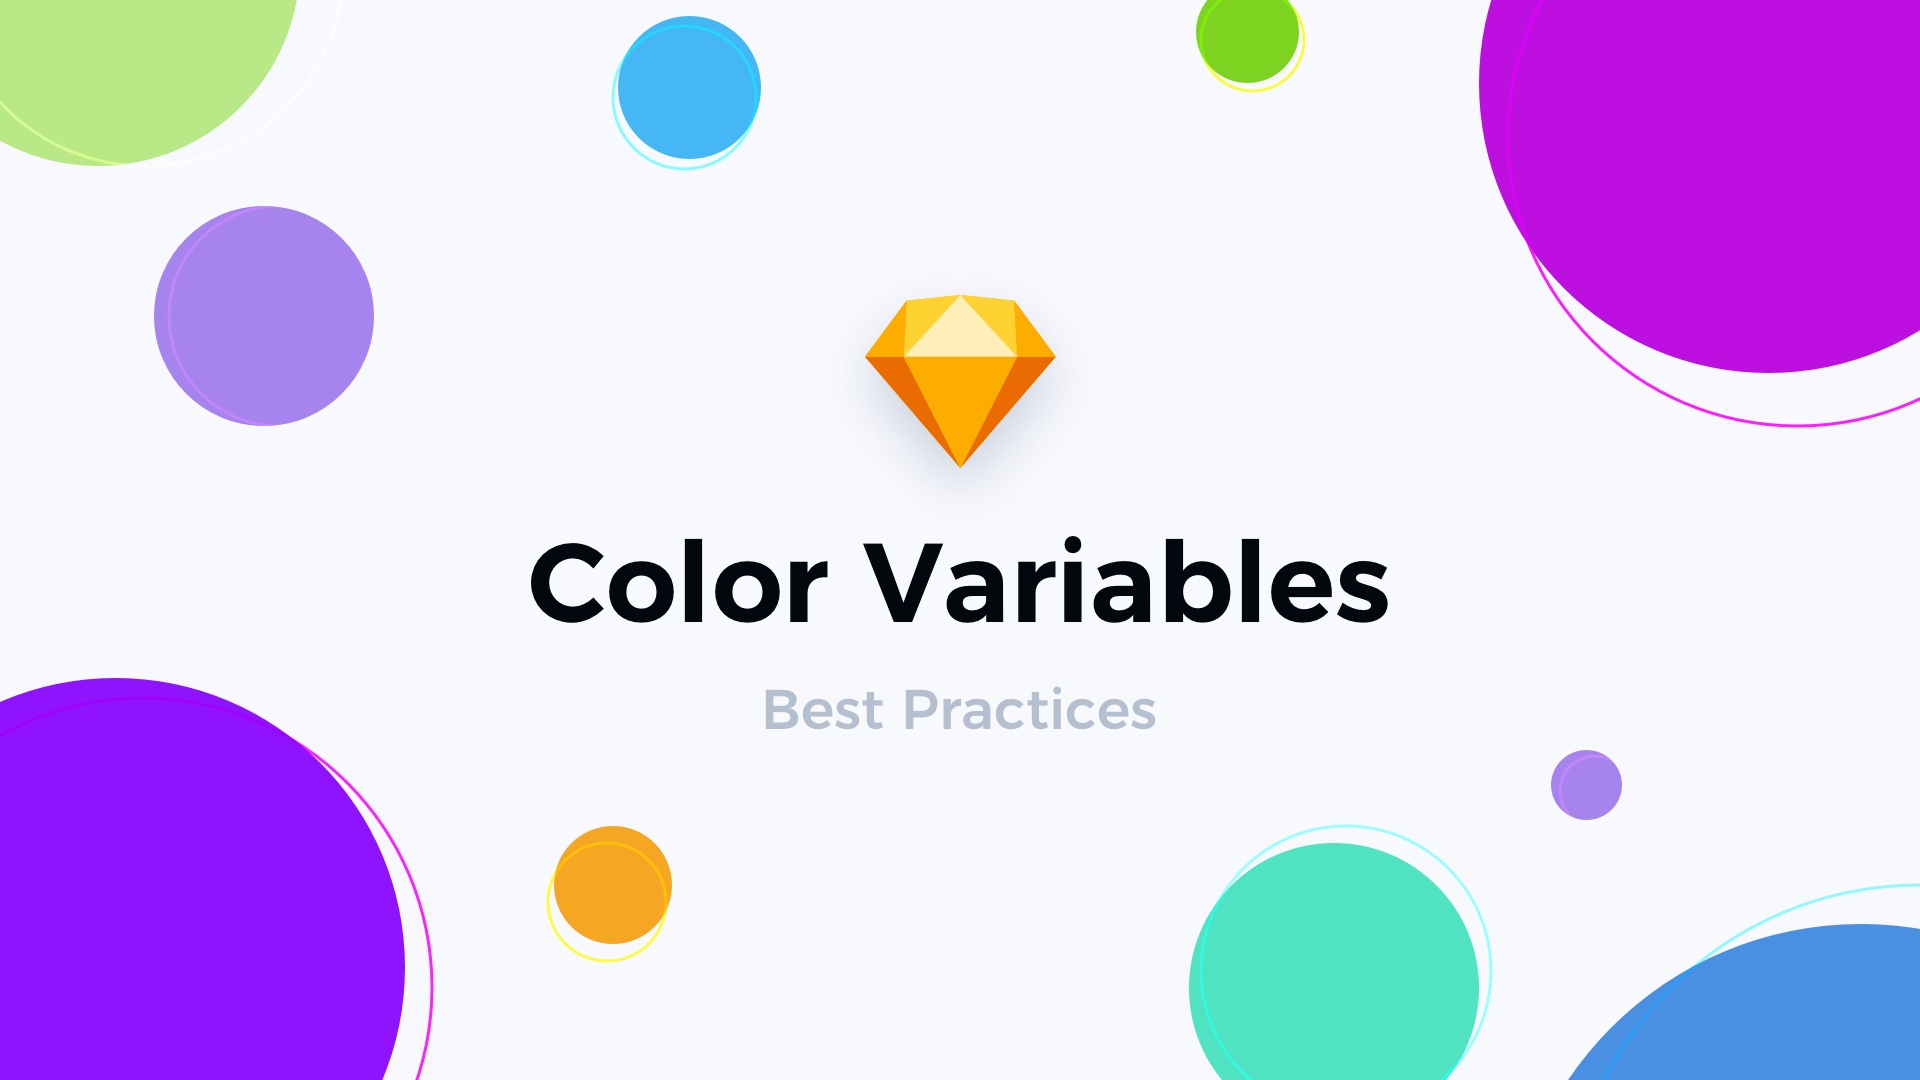 Color Variables in Sketch